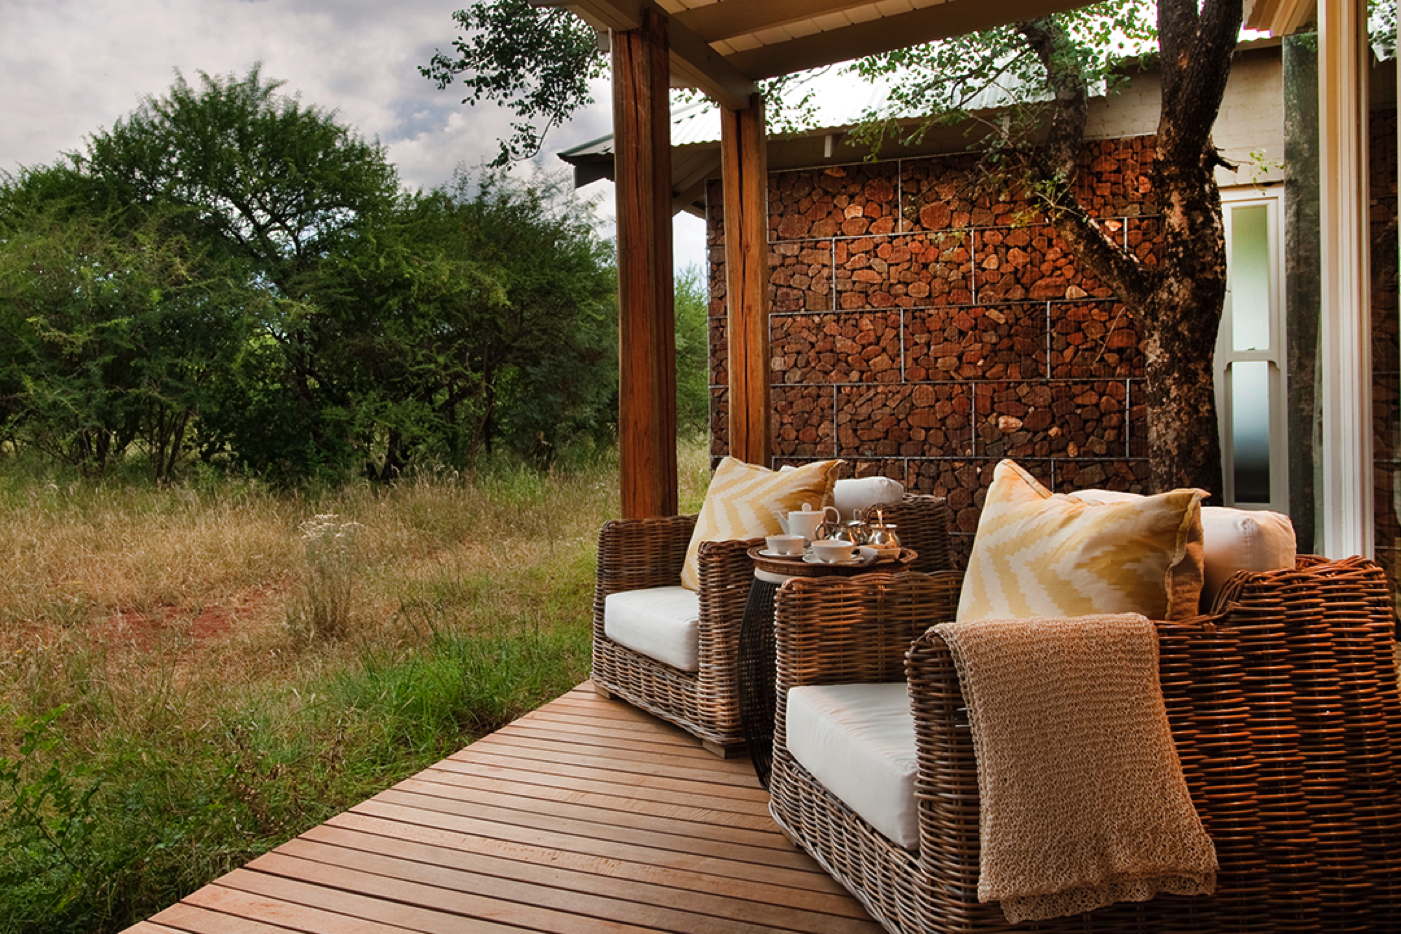 Luxusvilla-Ferienvilla-Villa in Südafrika-mieten-Madikwe Game Reserve-Safari